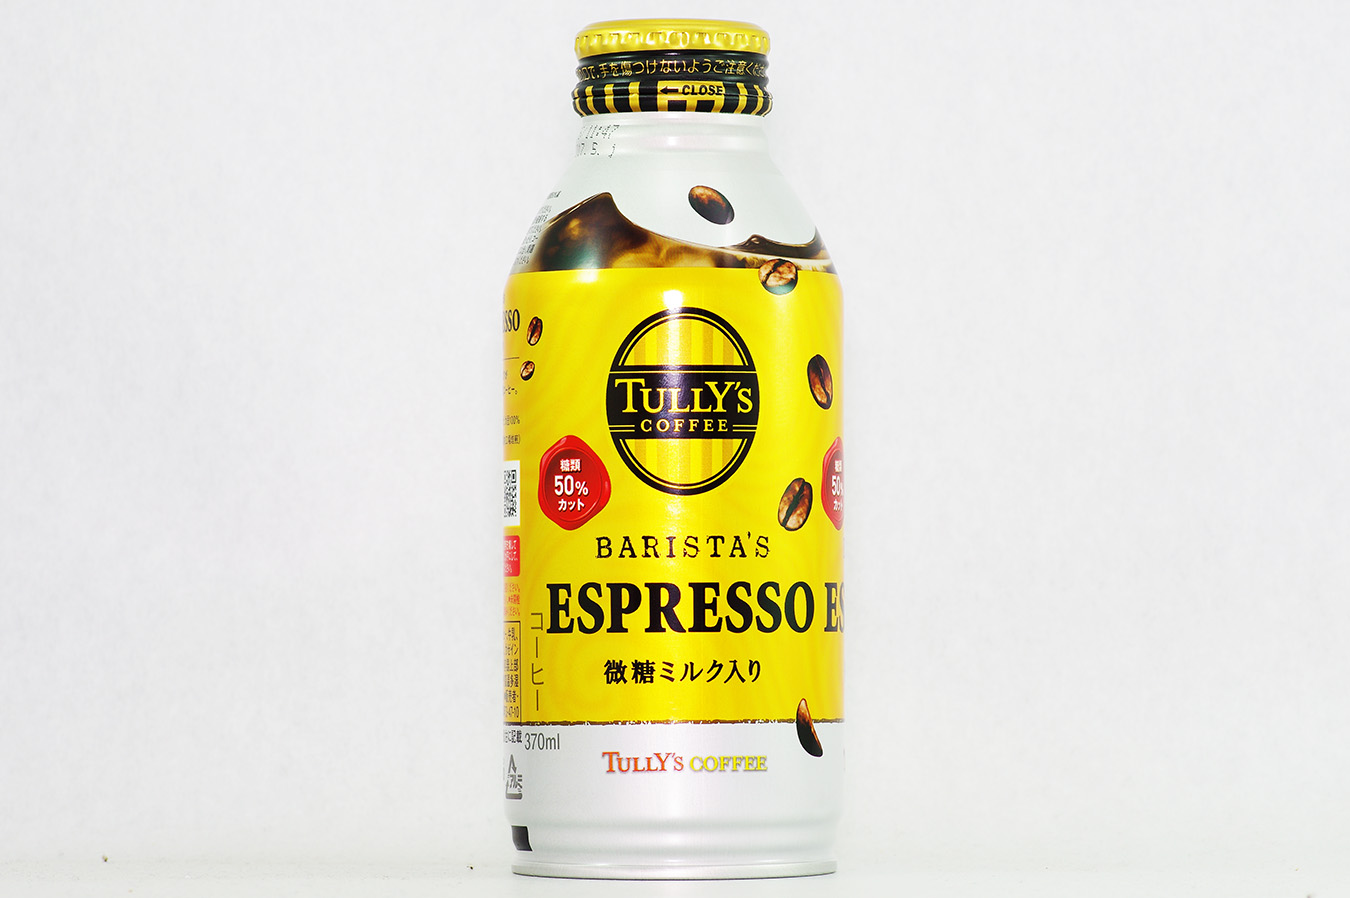 TULLY'S COFFEE BARISTA'S ESPRESSO 2016年4月